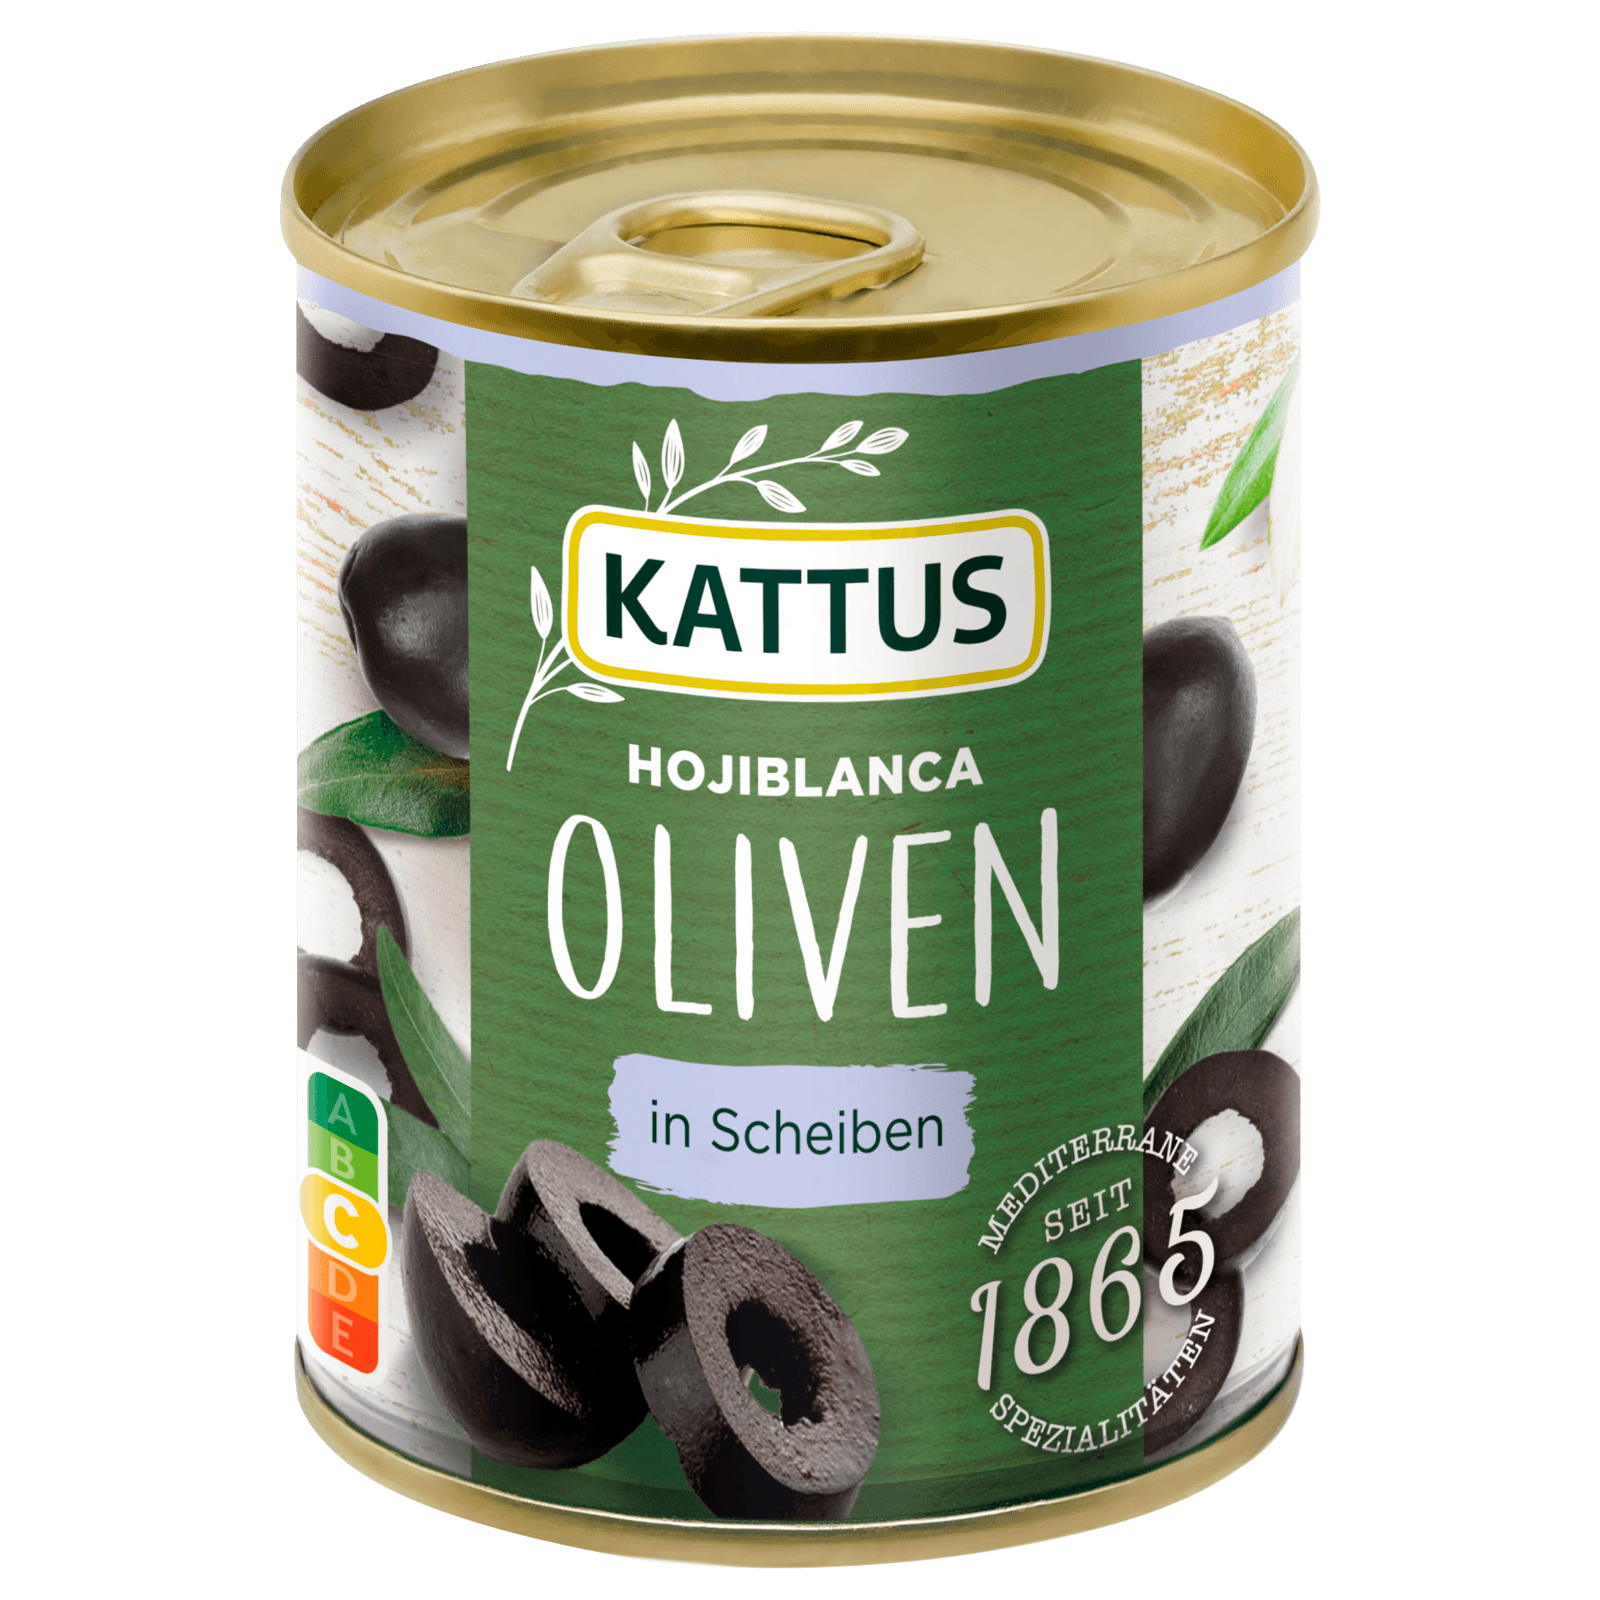 Kattus Hojiblance Oliven geschnitten 85g  für 1.59 EUR